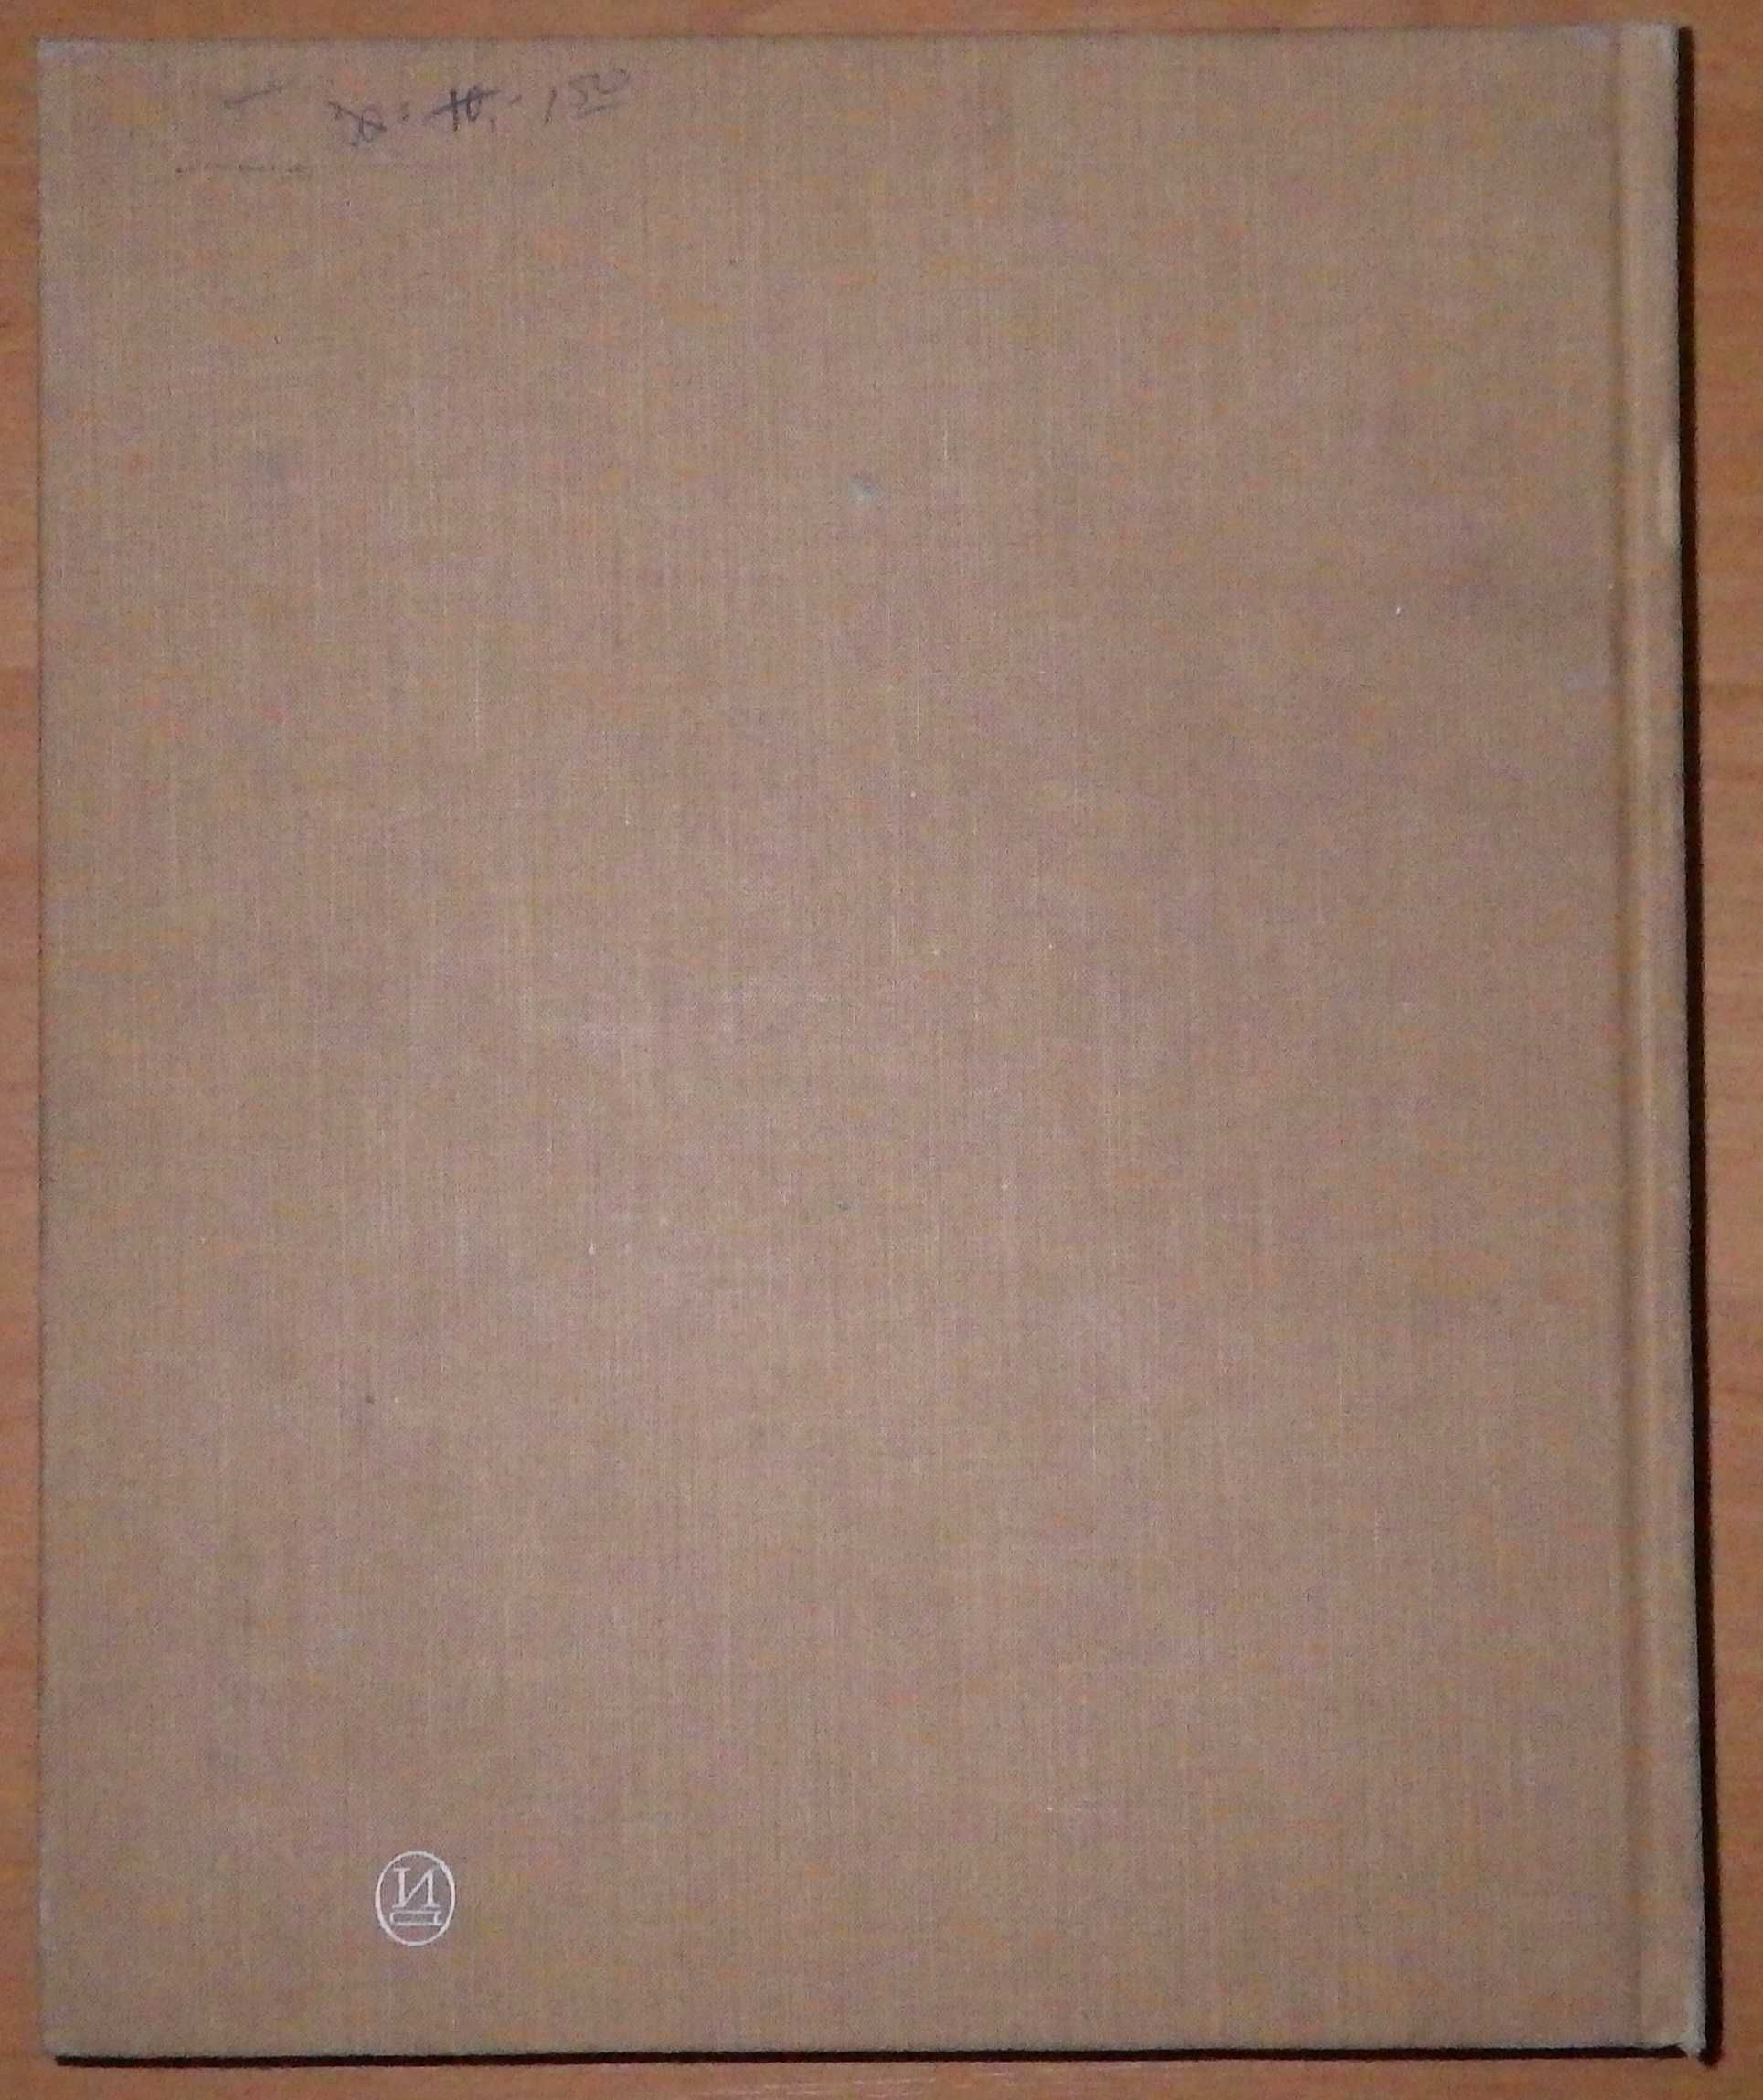 Книга "Росписи гуцульских мастеров." Изд. "Искусство", 1972